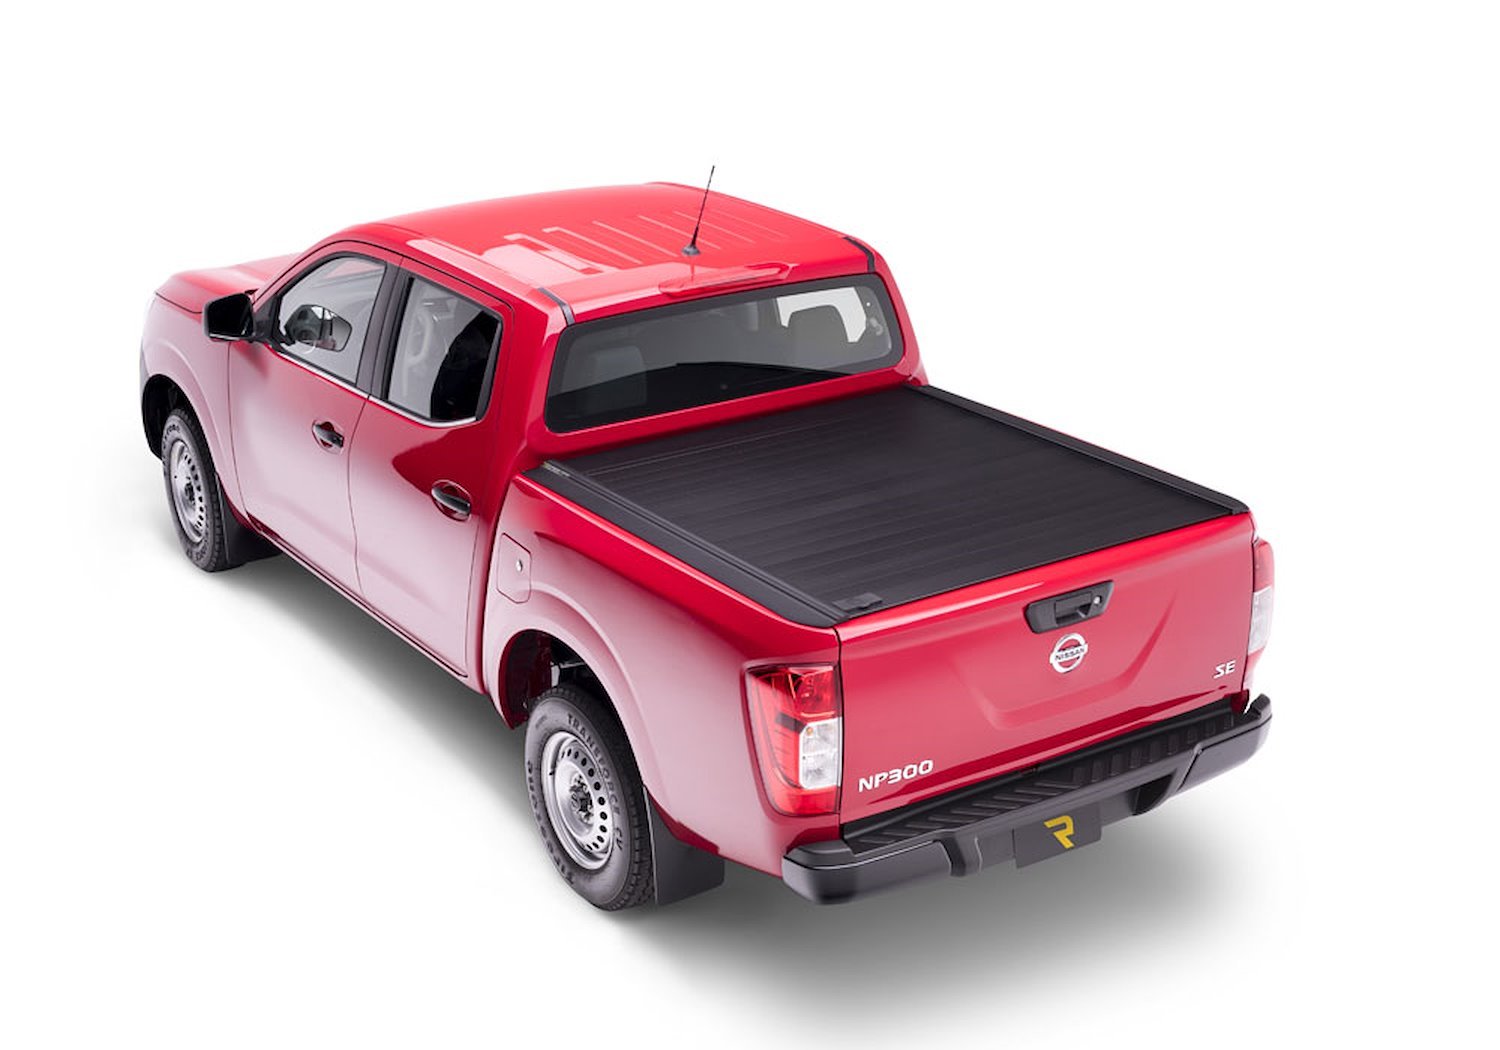 80752 RetraxPRO MX Retractable Tonneau Cover Fits Select Nissan Titan King Cab 6' 6" Bed